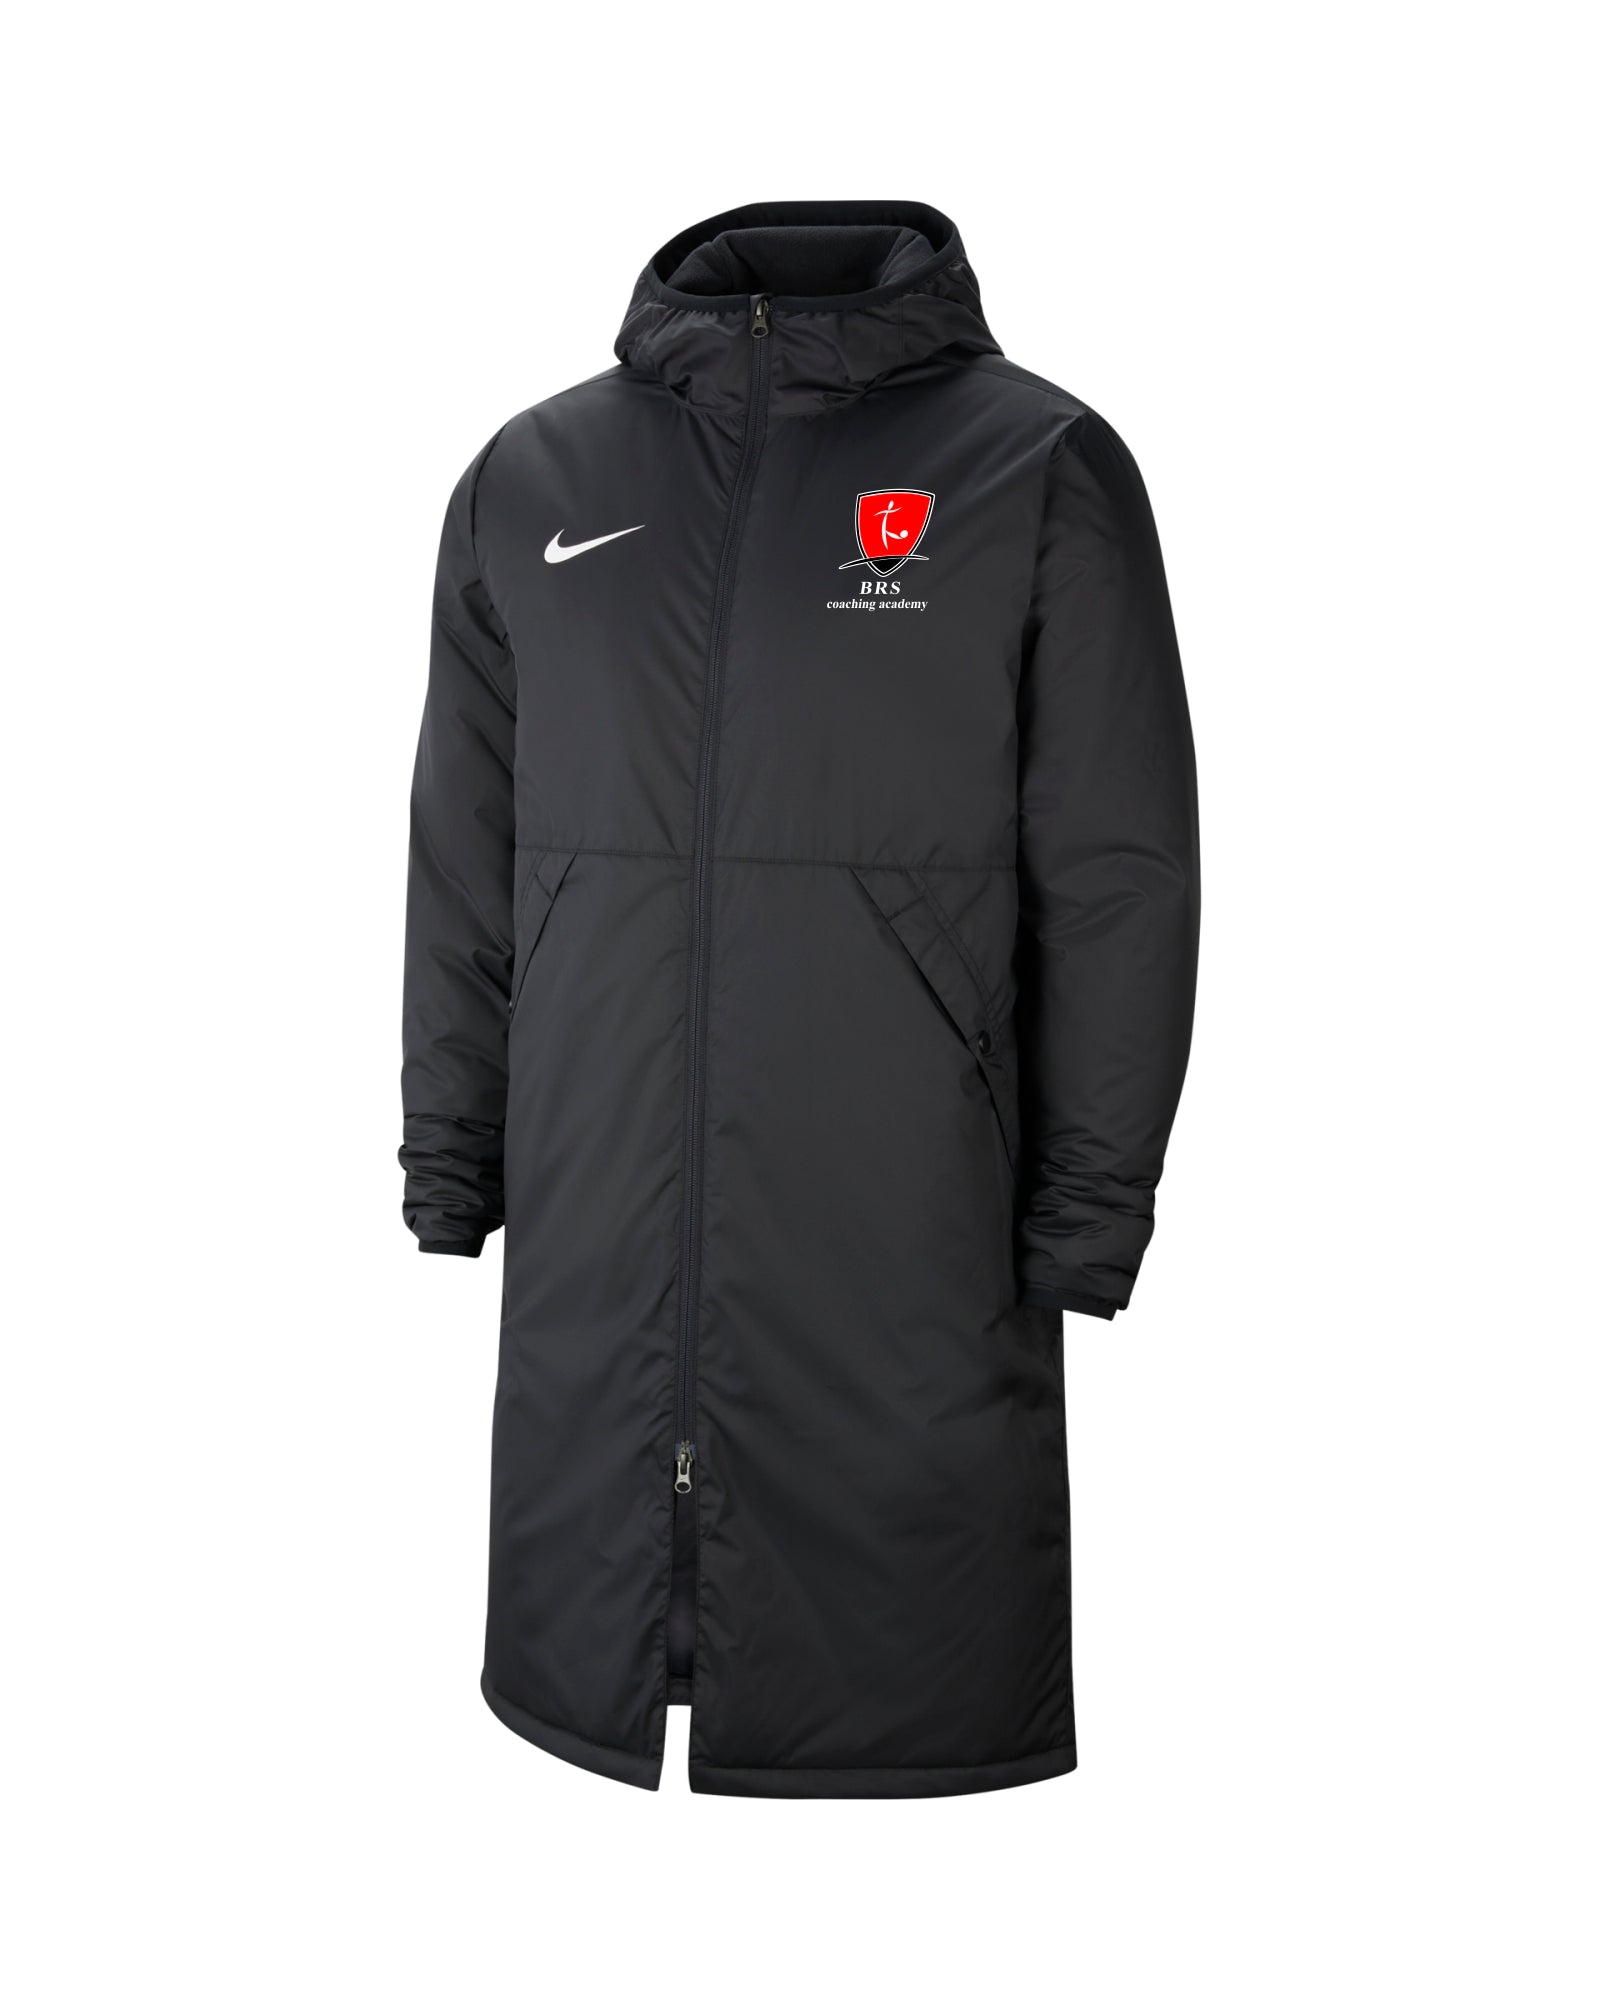 BRS Coaches - Nike Winter Jacket